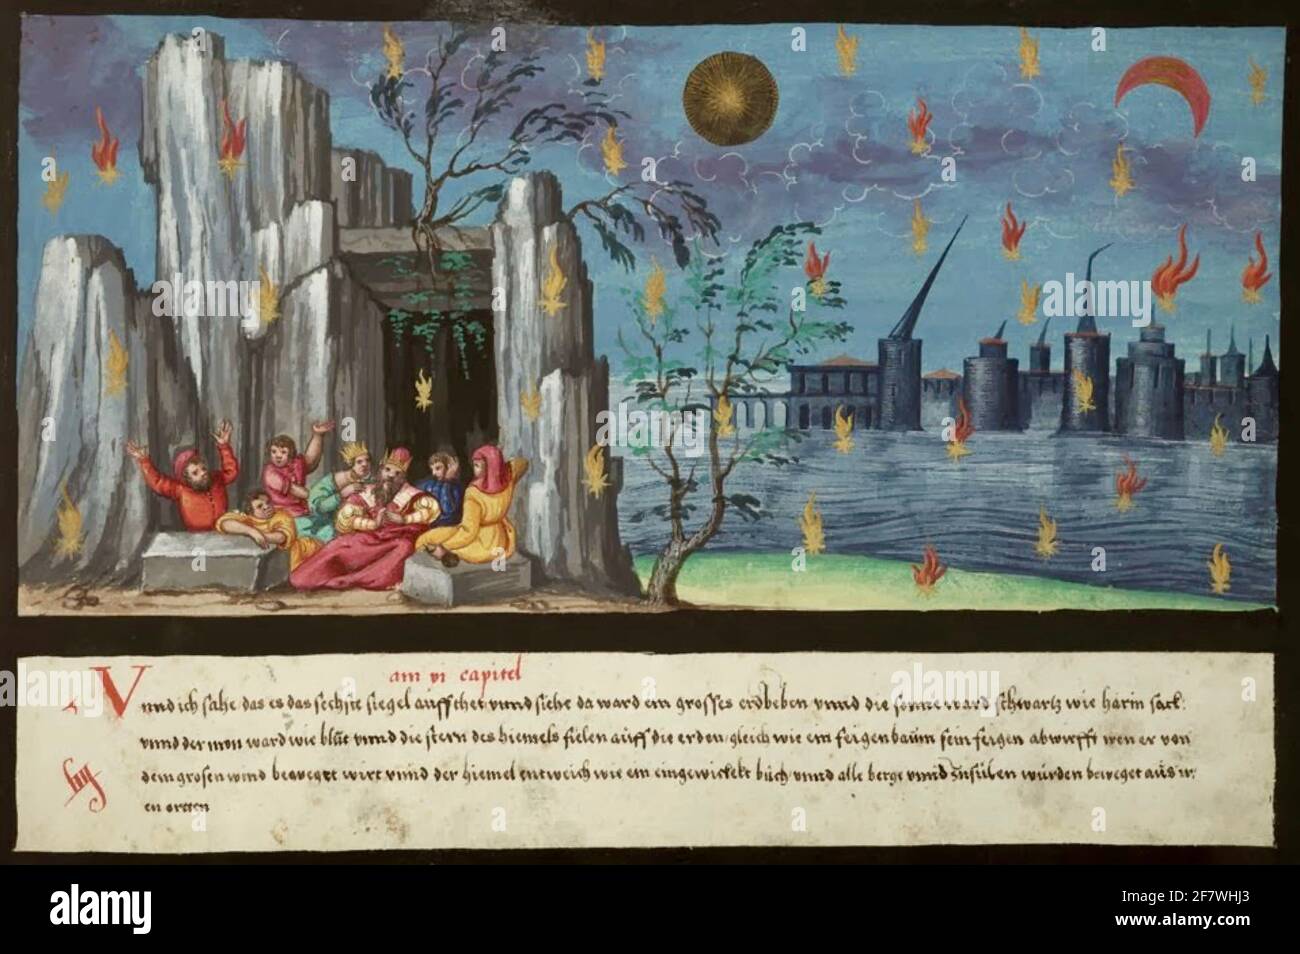 Imagen del Libro de los Milagros de Augsburgo Escena del libro final del Nuevo Testamento - El Libro de las Revelaciones de San Juan el Divino. Foto de stock